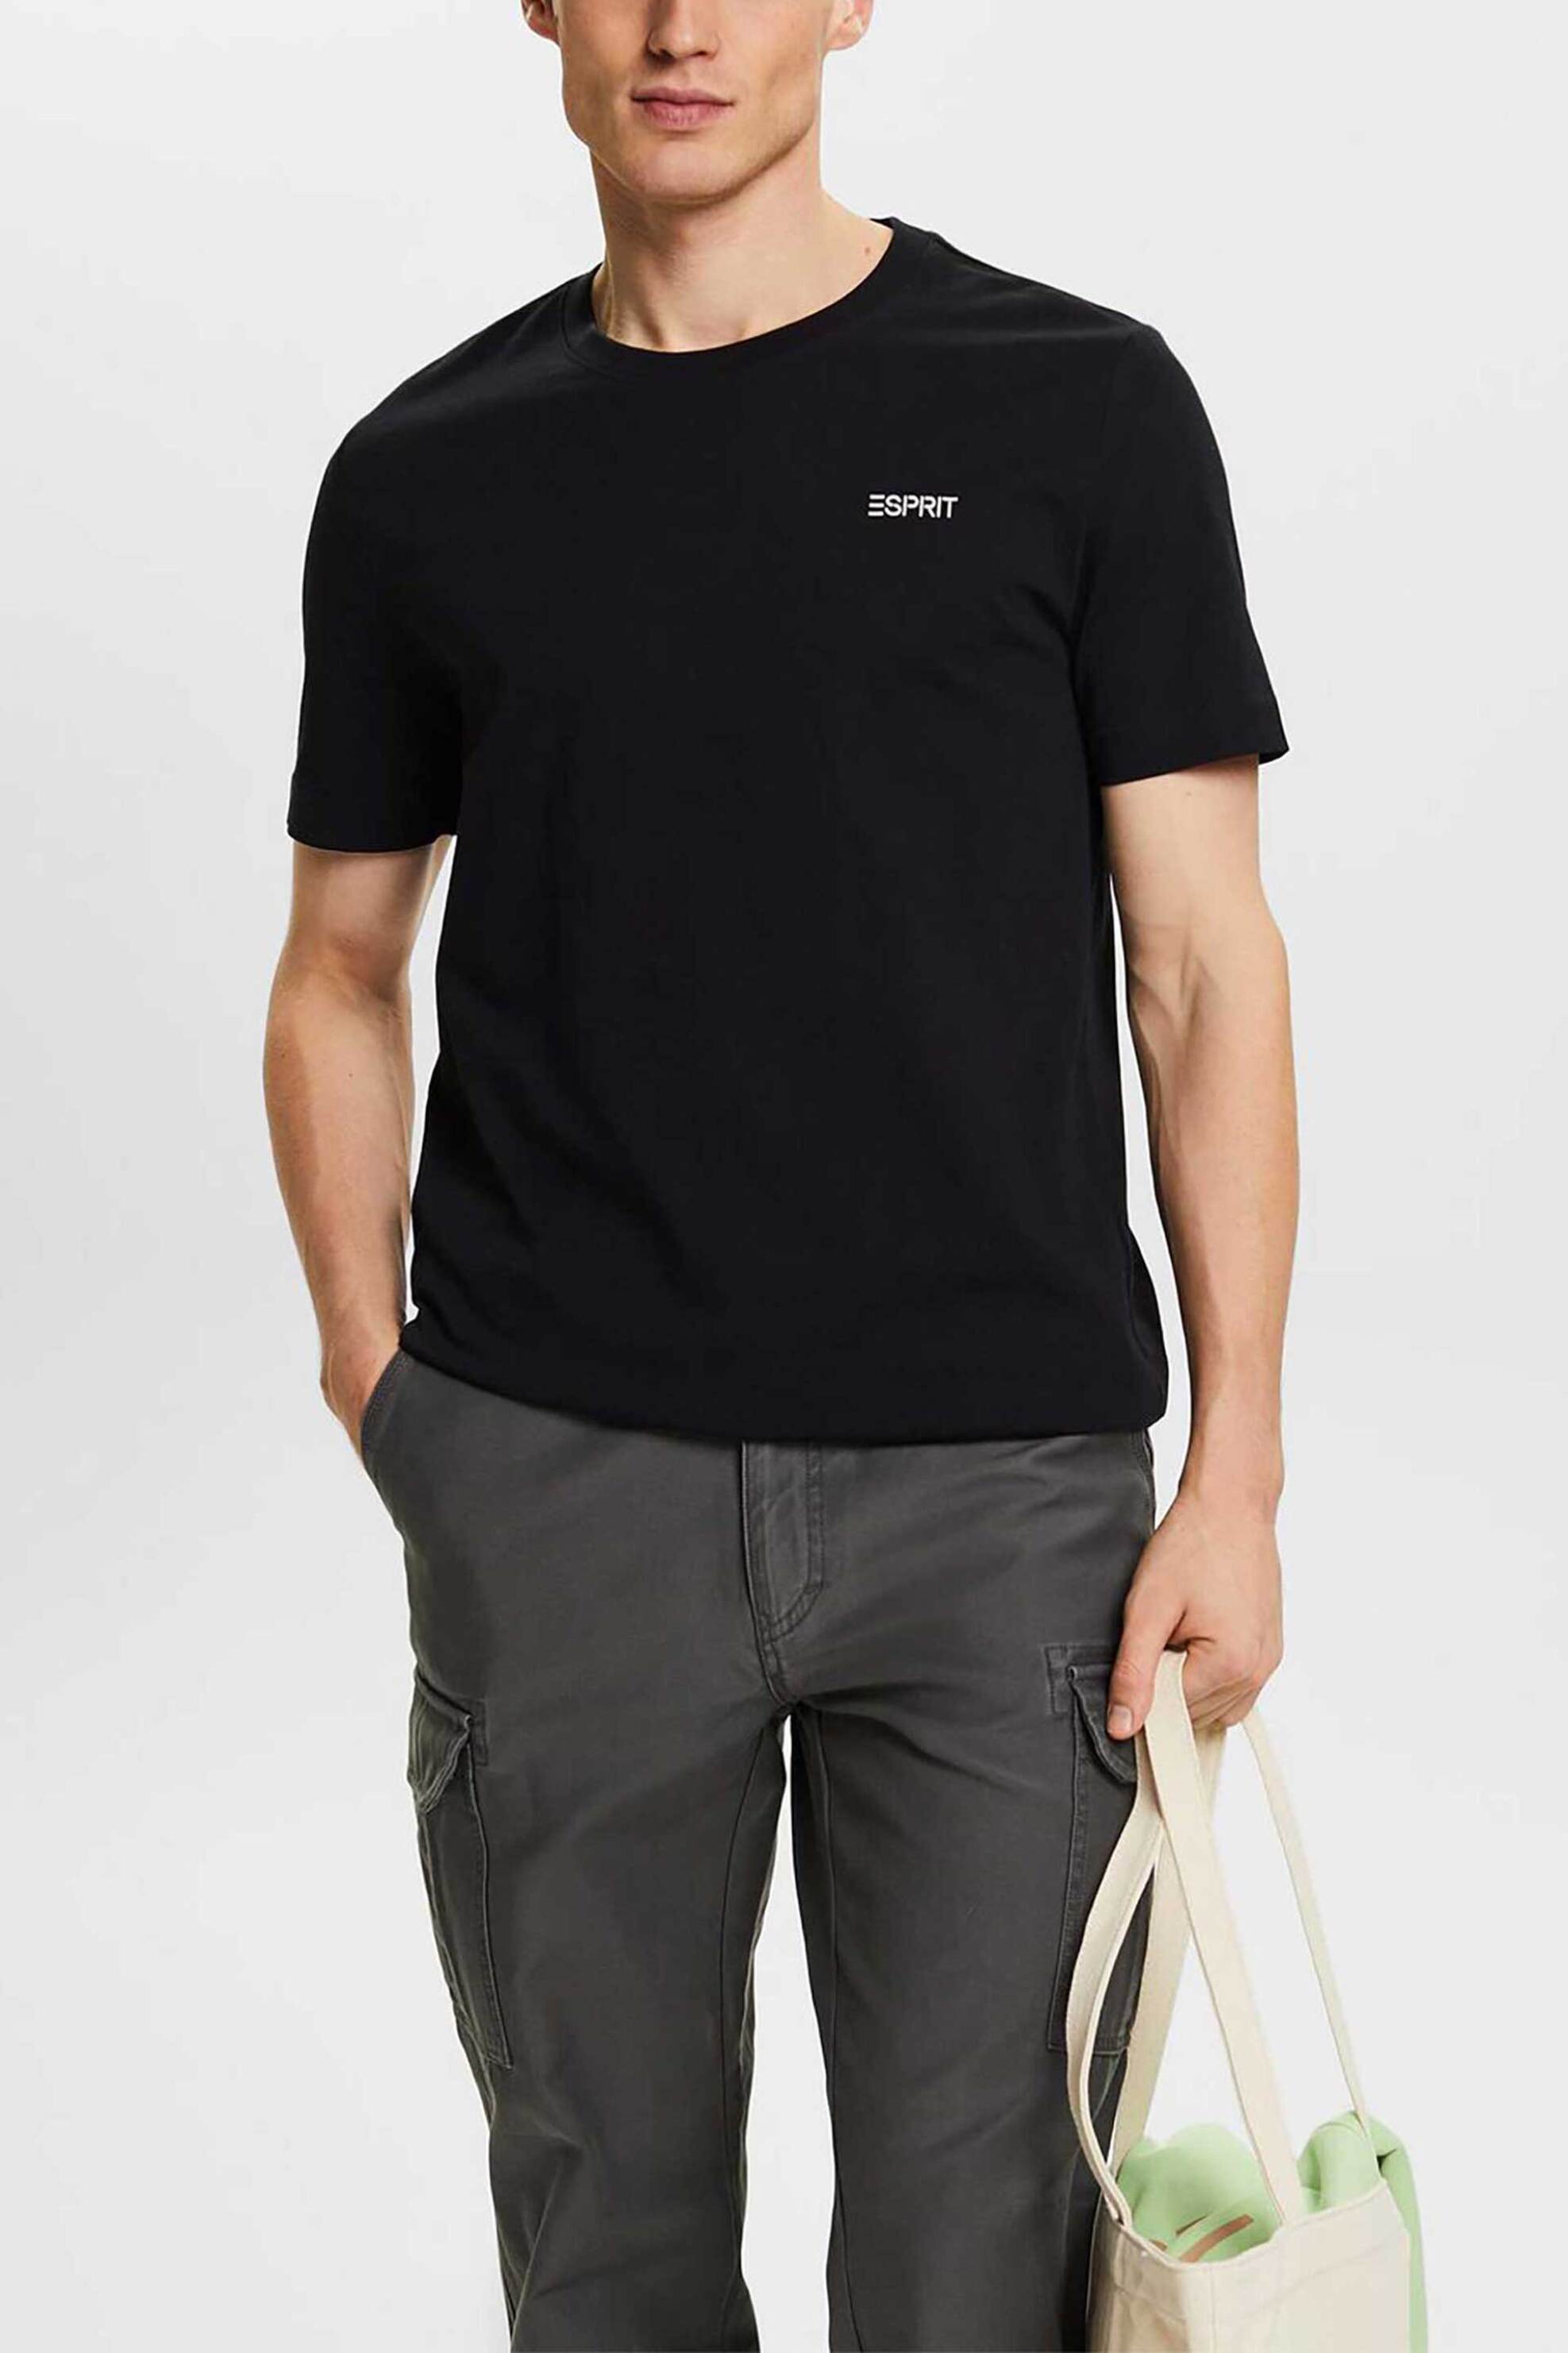 Ανδρική Μόδα > Ανδρικά Ρούχα > Ανδρικές Μπλούζες > Ανδρικά T-Shirts Esprit ανδρικό T-shirt με logo print Slim Fit - 014EE2K308 Μαύρο